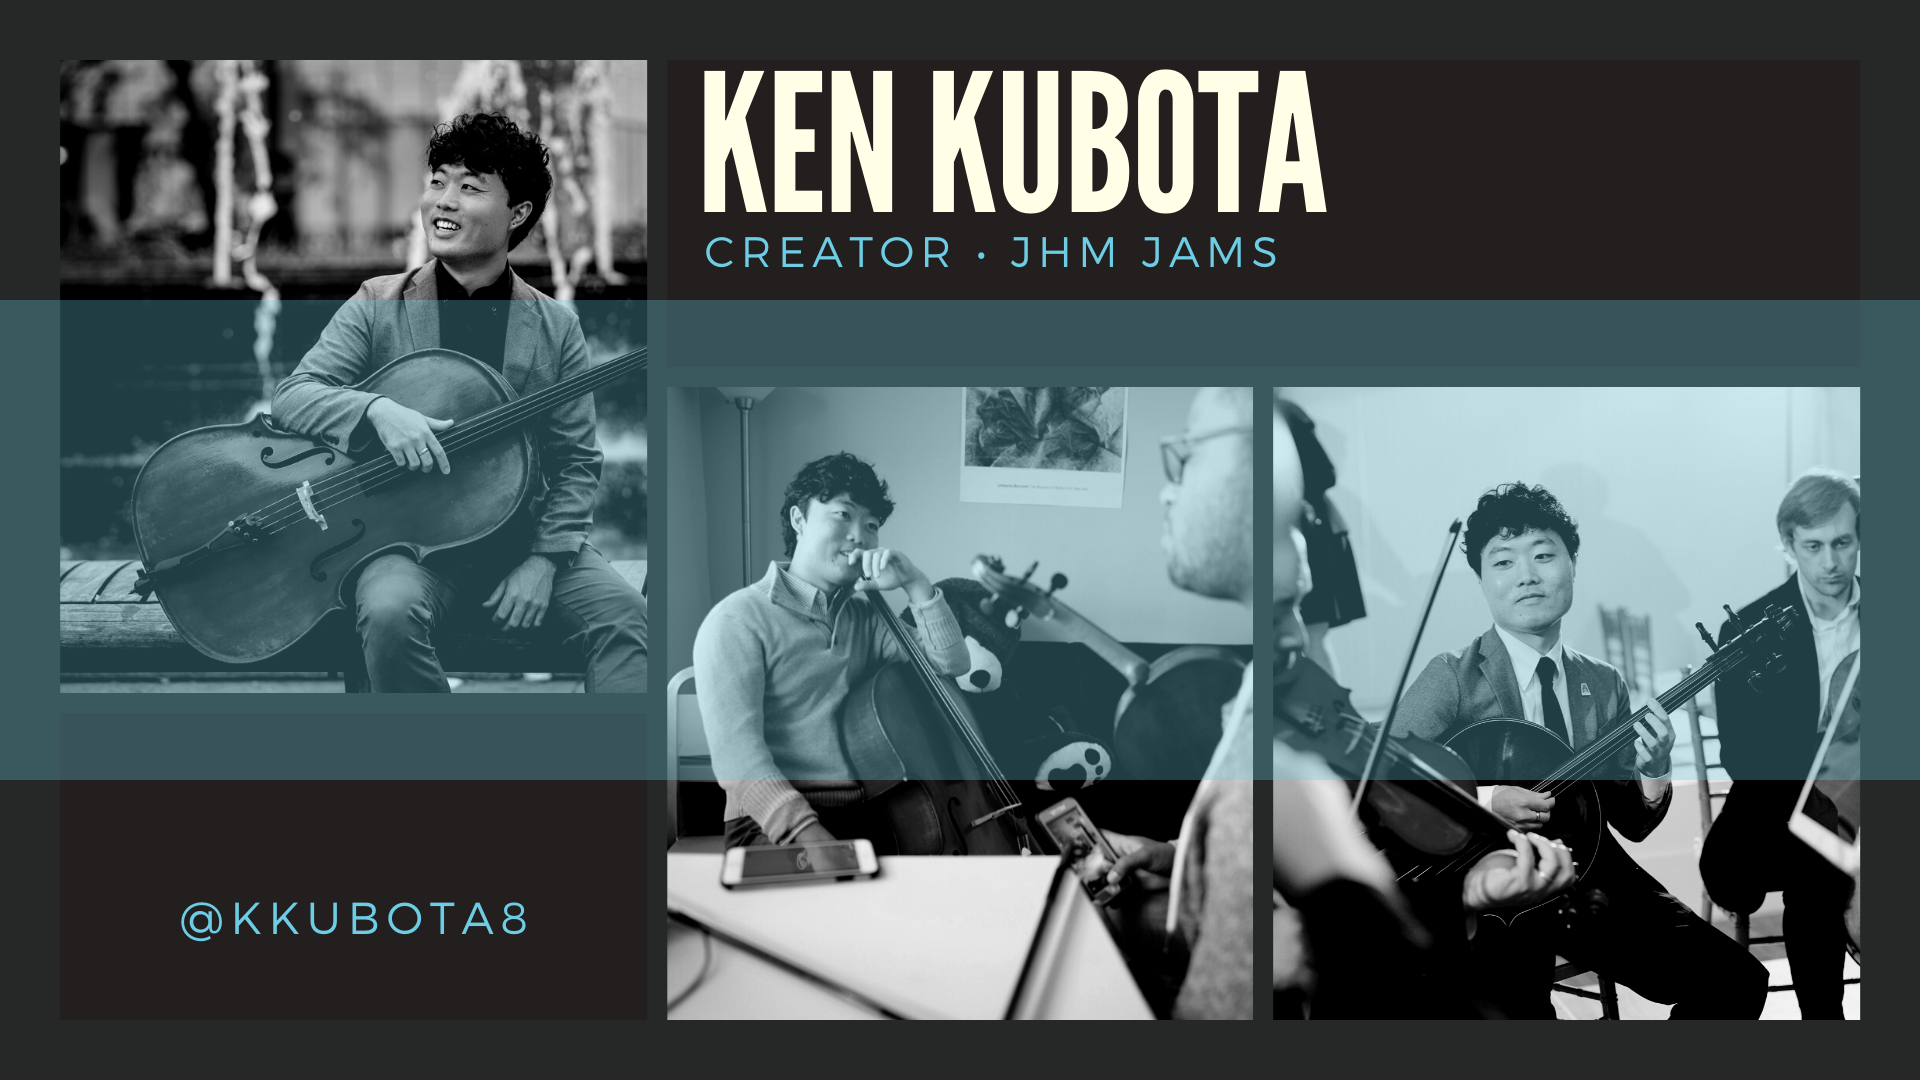 Ken Kubota